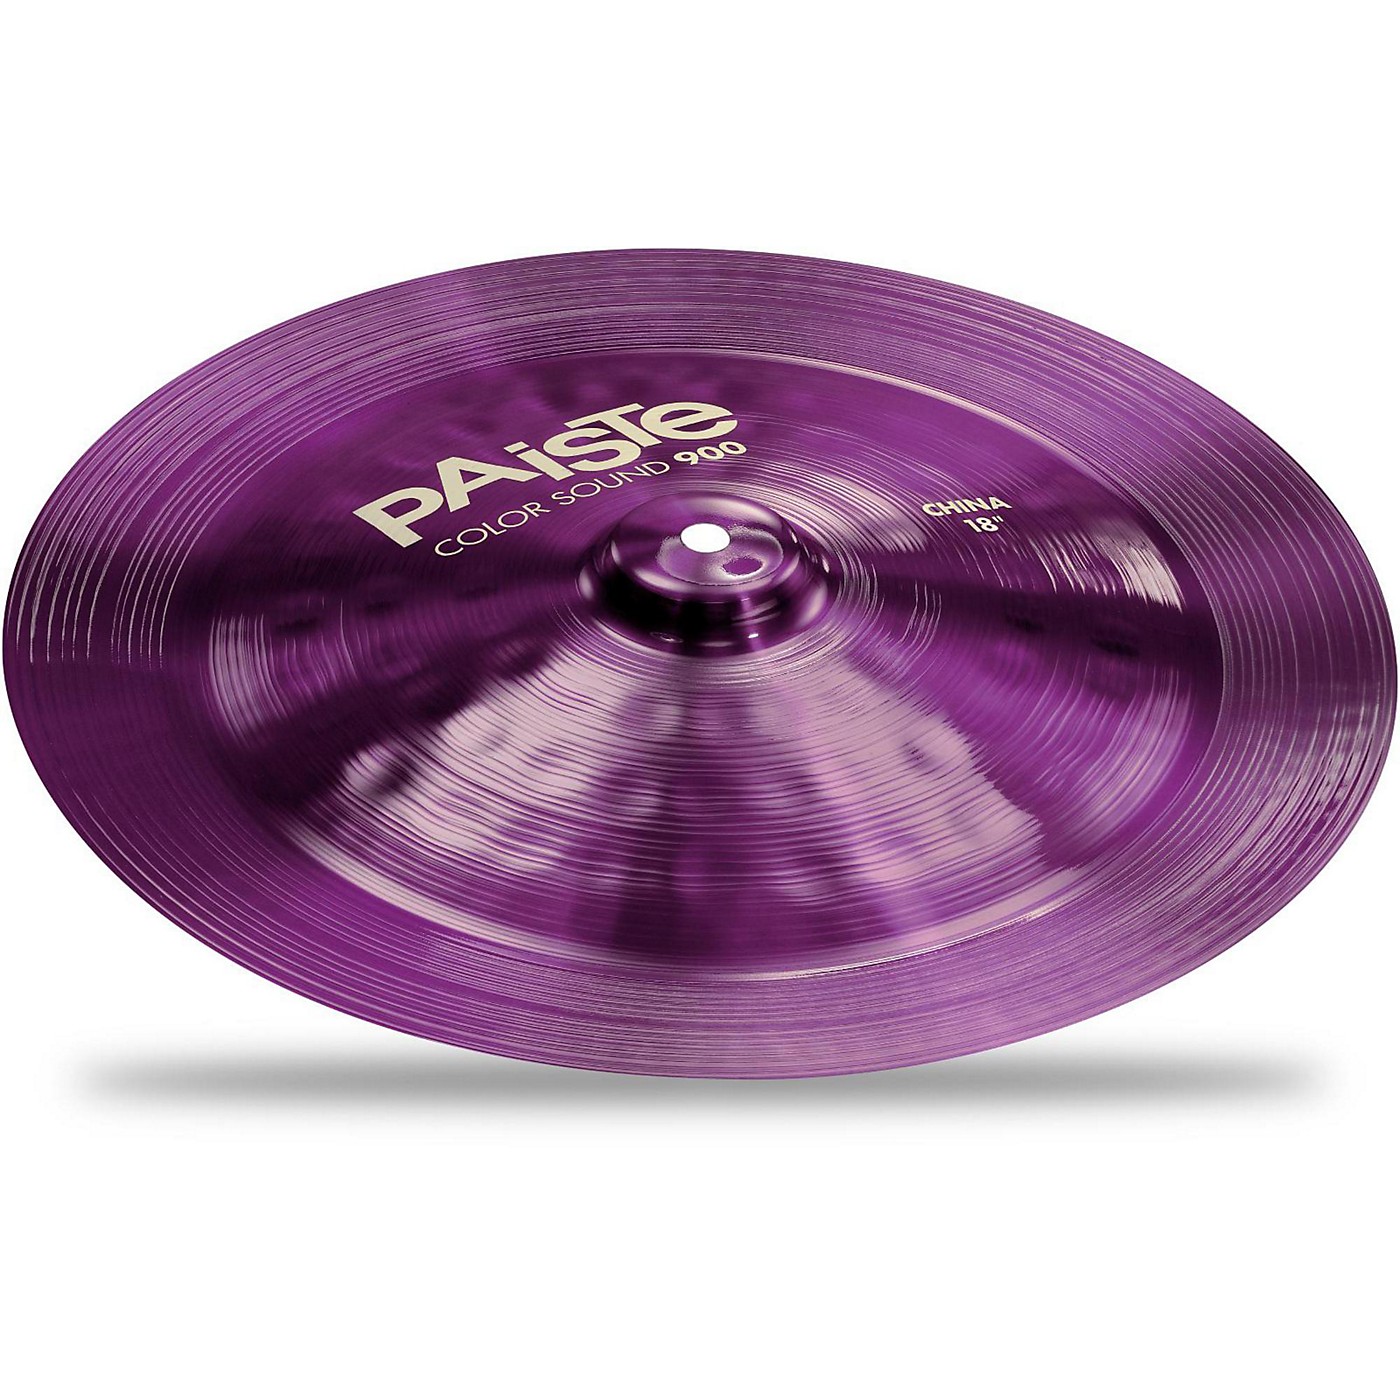 Paiste Colorsound 900 China Cymbal Purple thumbnail